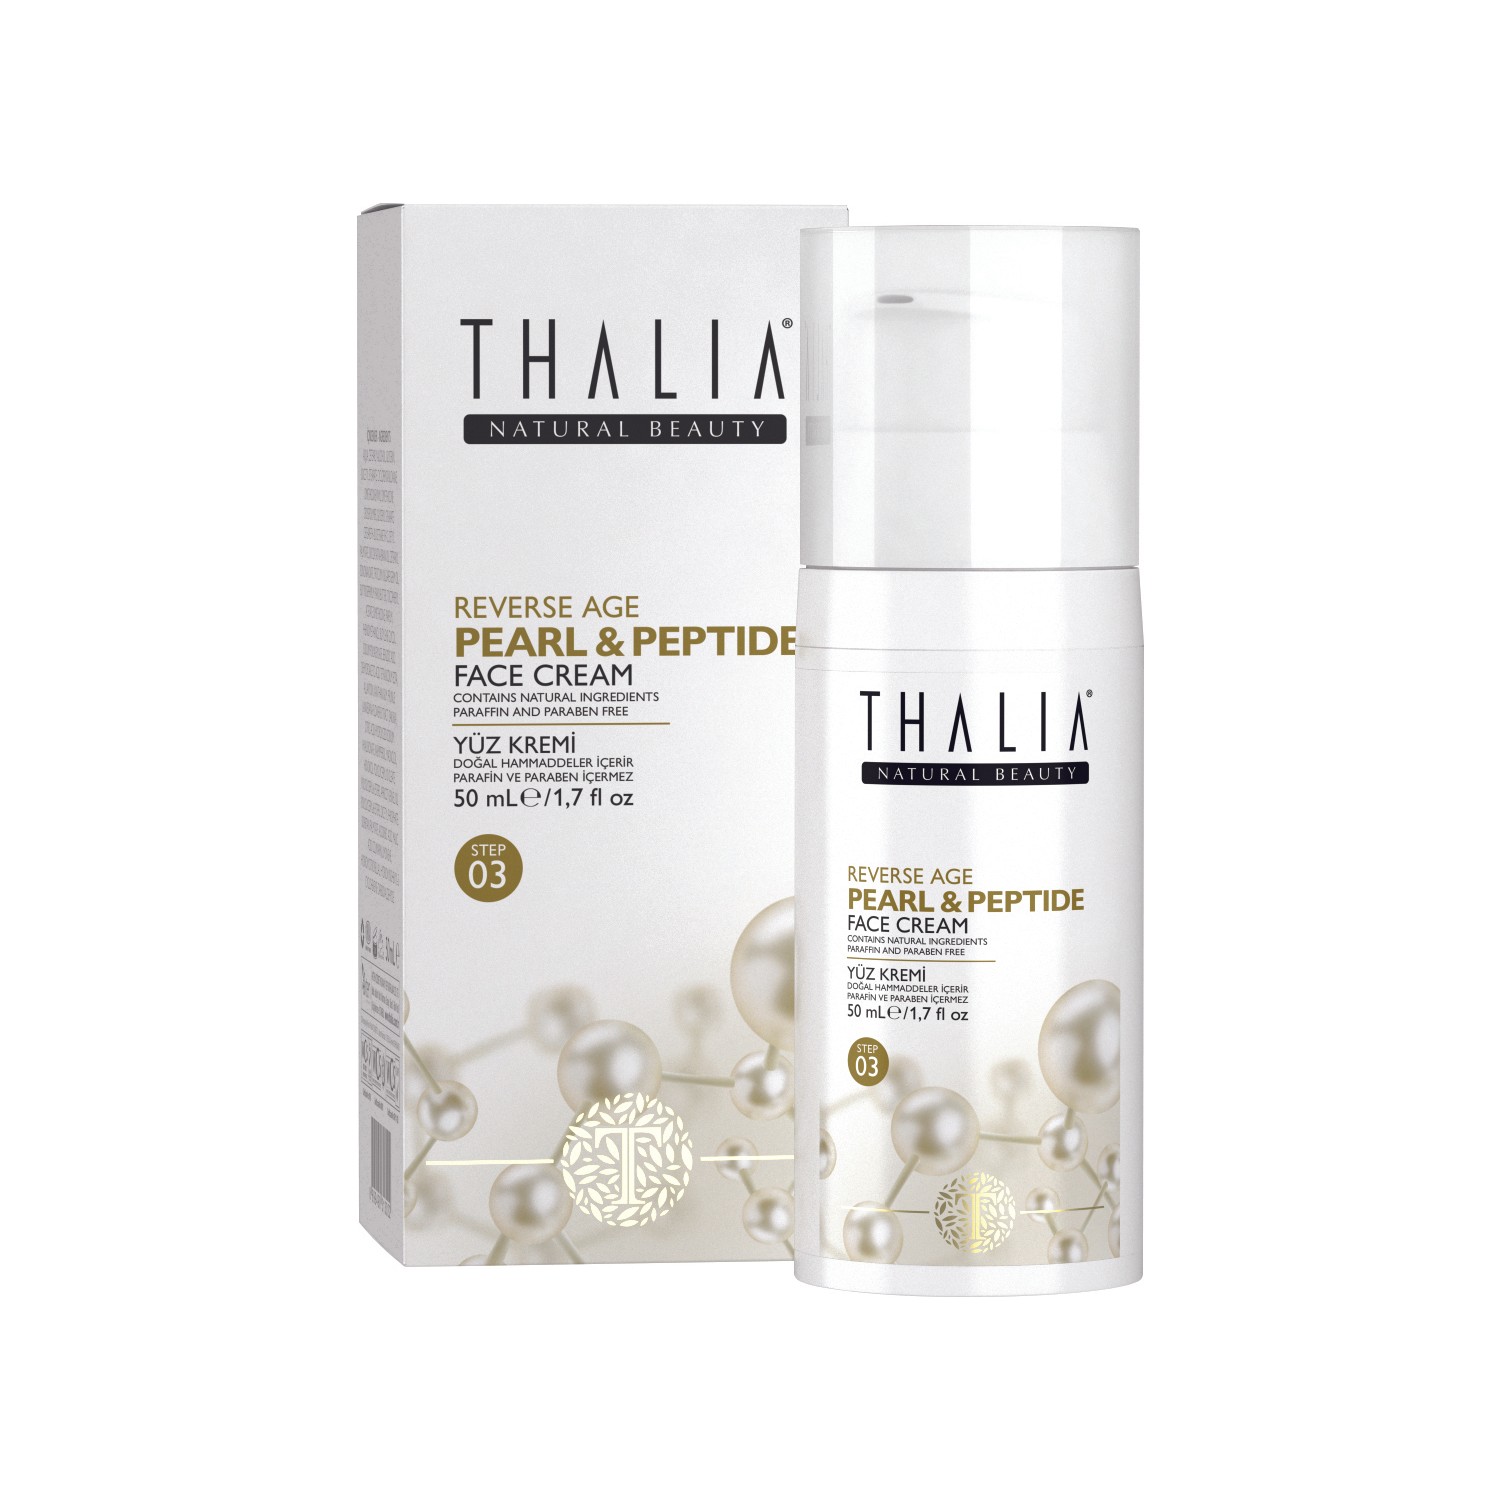 Омолаживающий крем для лица Thalia Pearl & Peptide 40+, 50 мл крем антивозрастной для лица thalia natural beauty age pearl